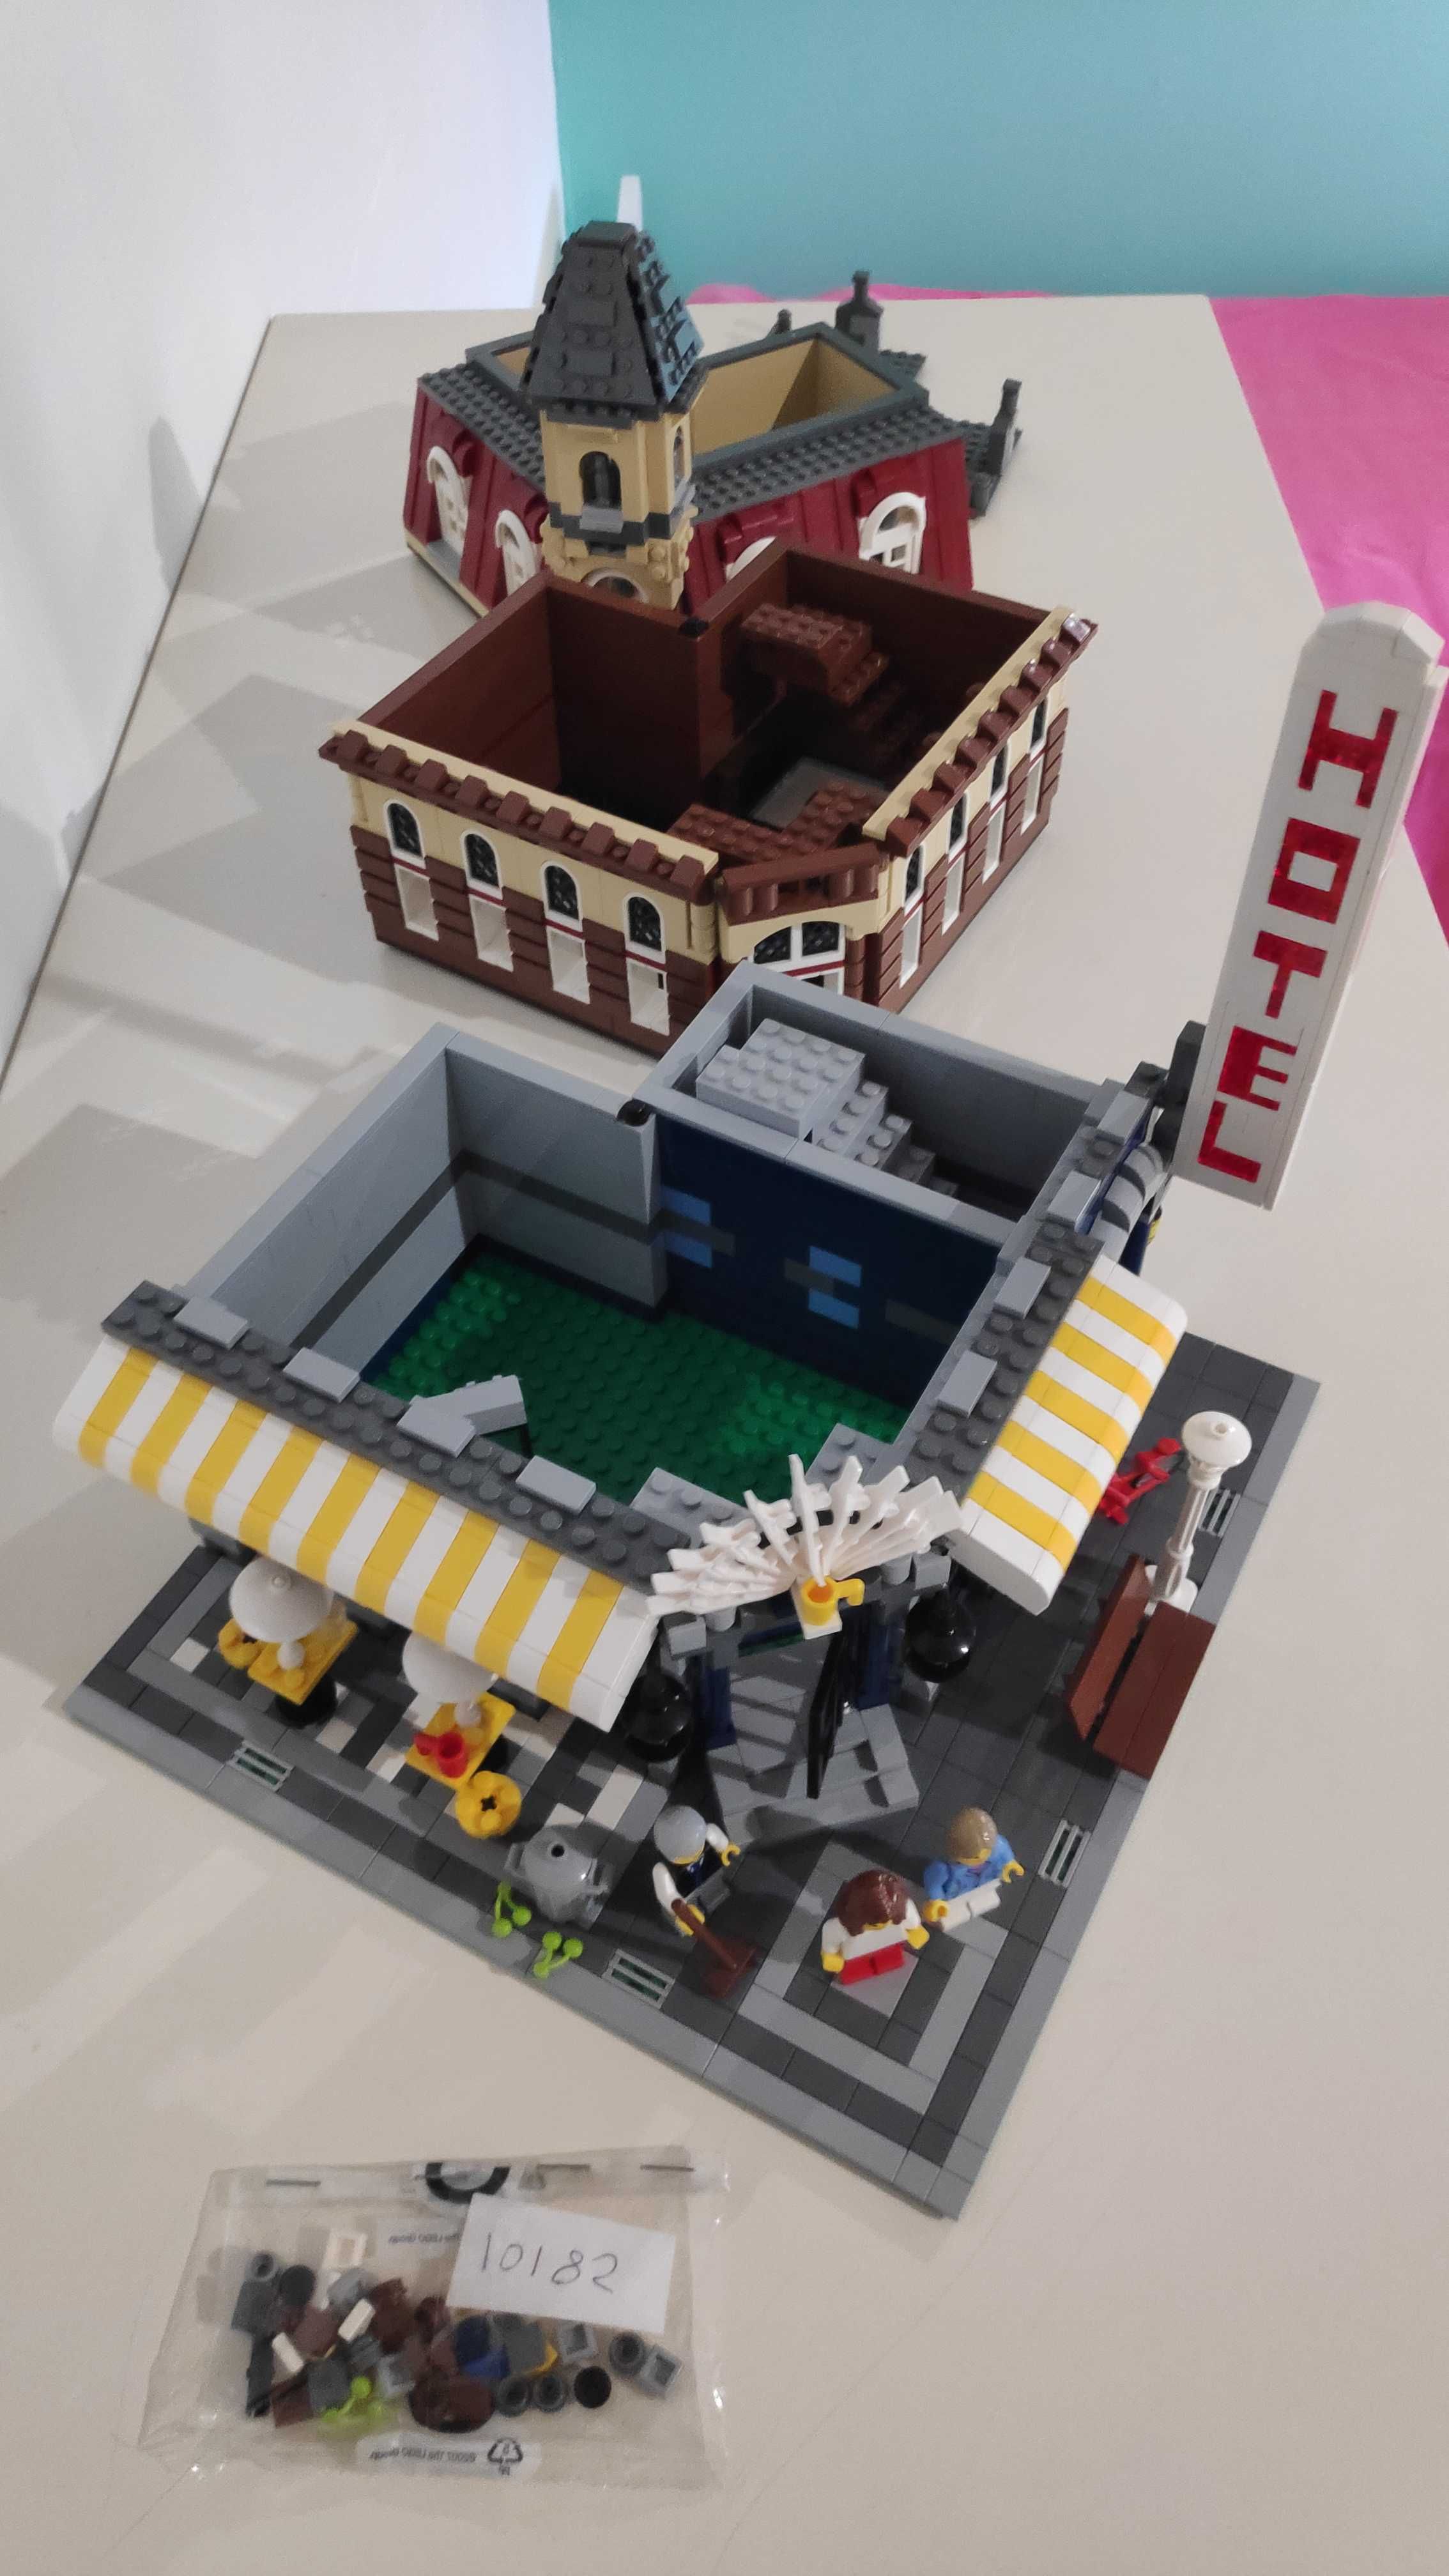 LEGO 10182 Café Corner